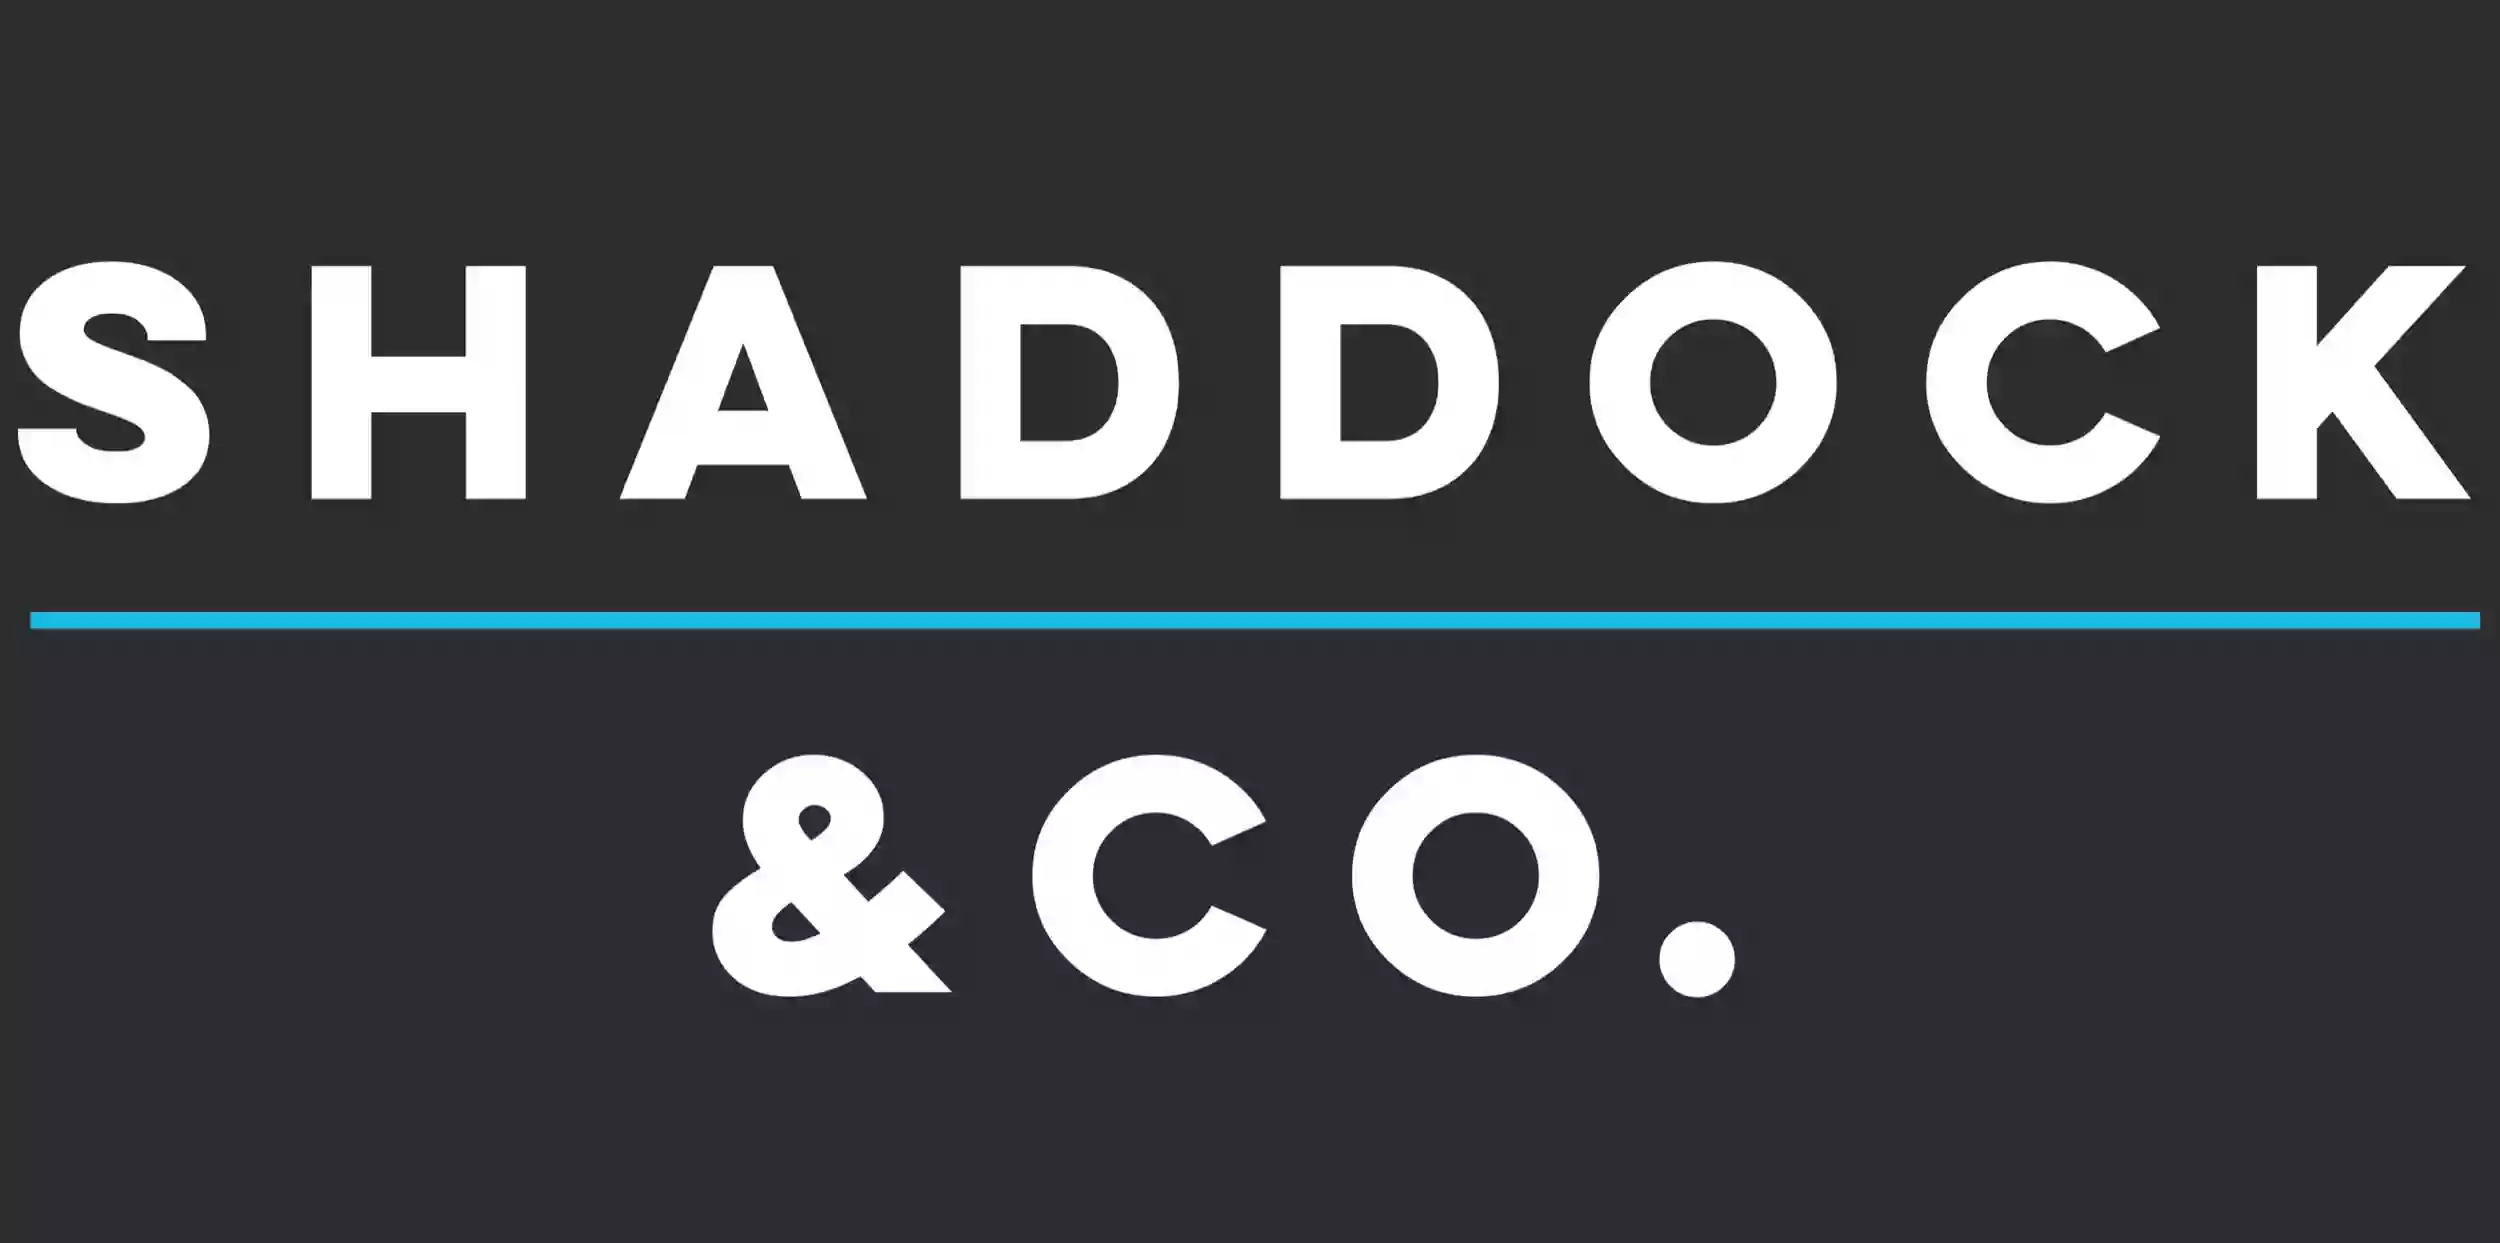 Shaddock & Co